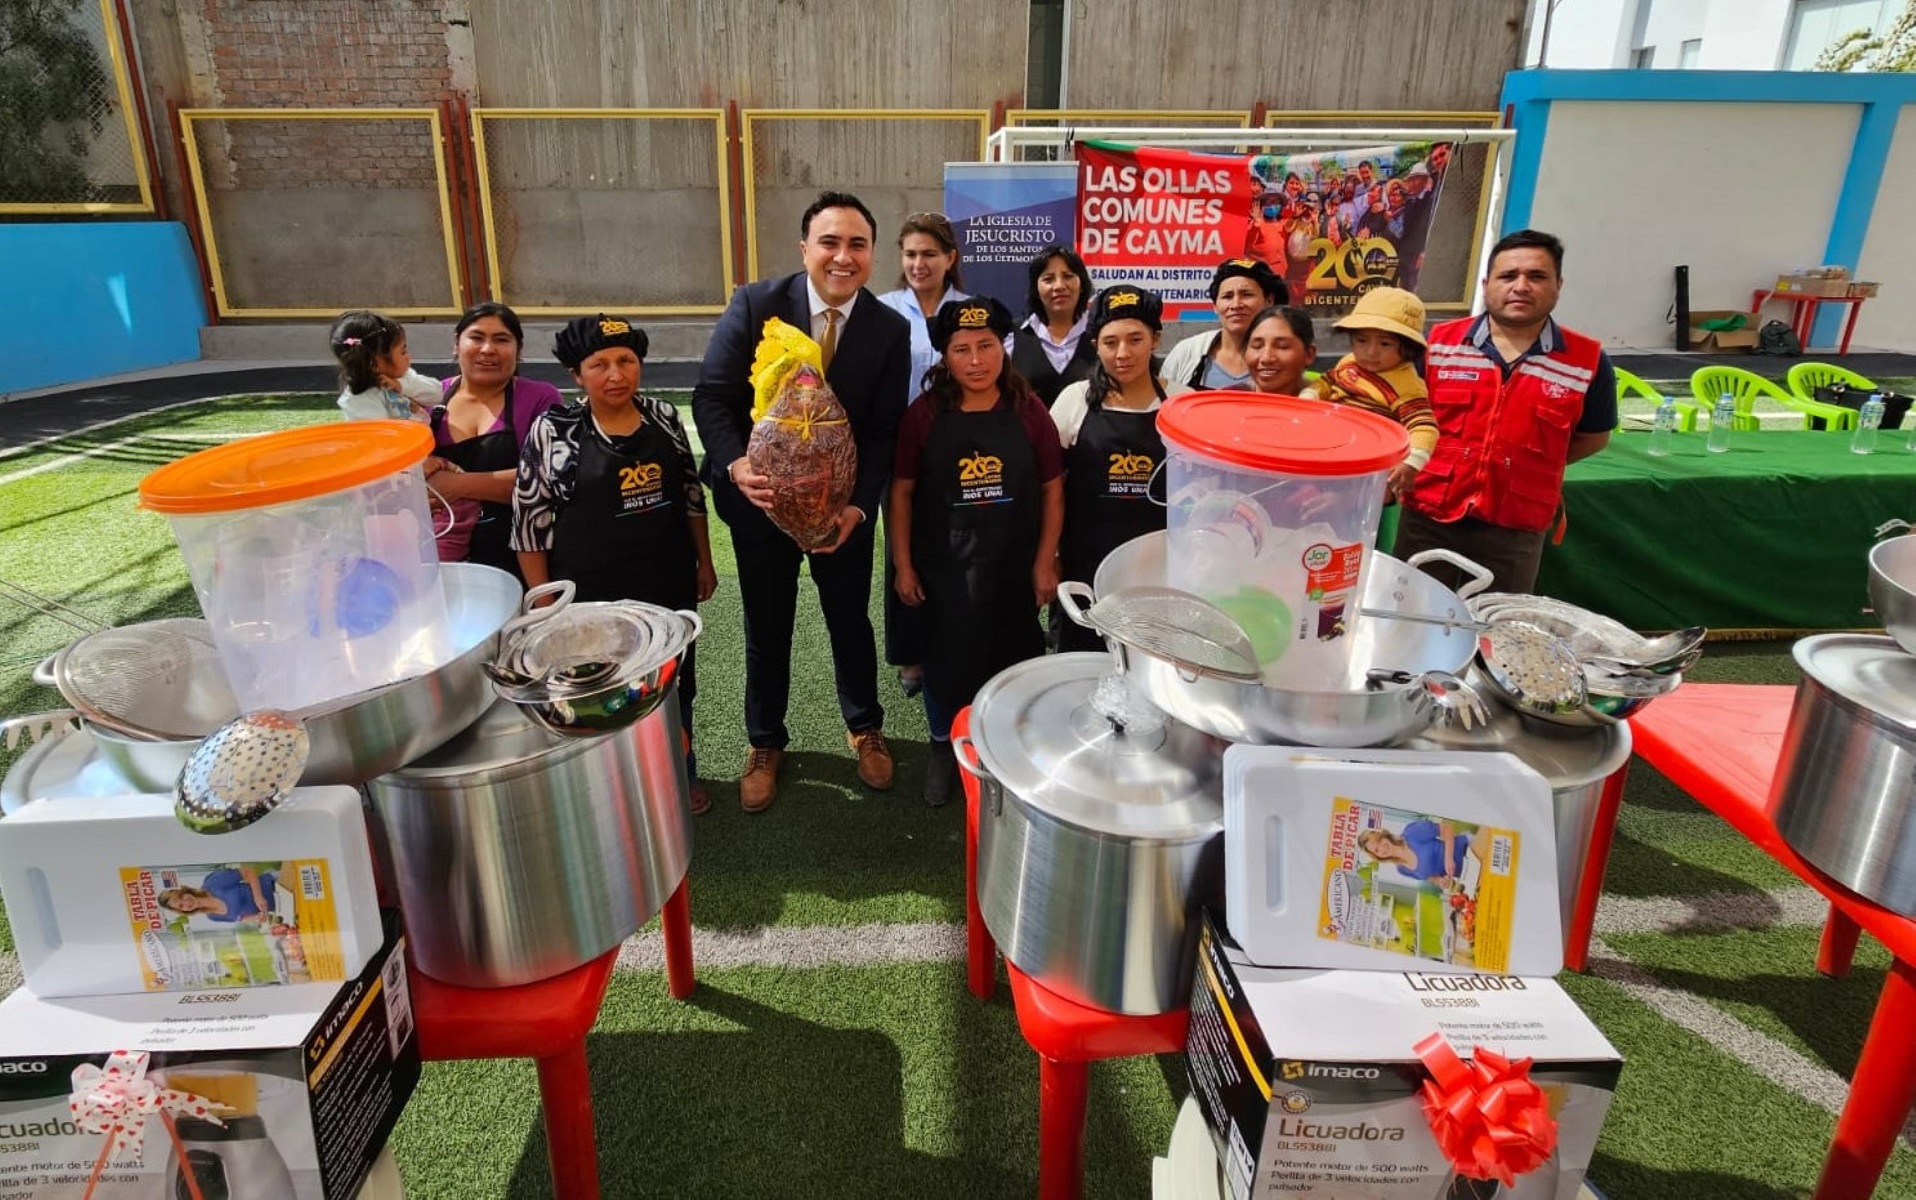 Iglesia de Jesucristo y MIDIS entregan kits de cocina para comedores populares del distrito de Cayma, Arequipa.